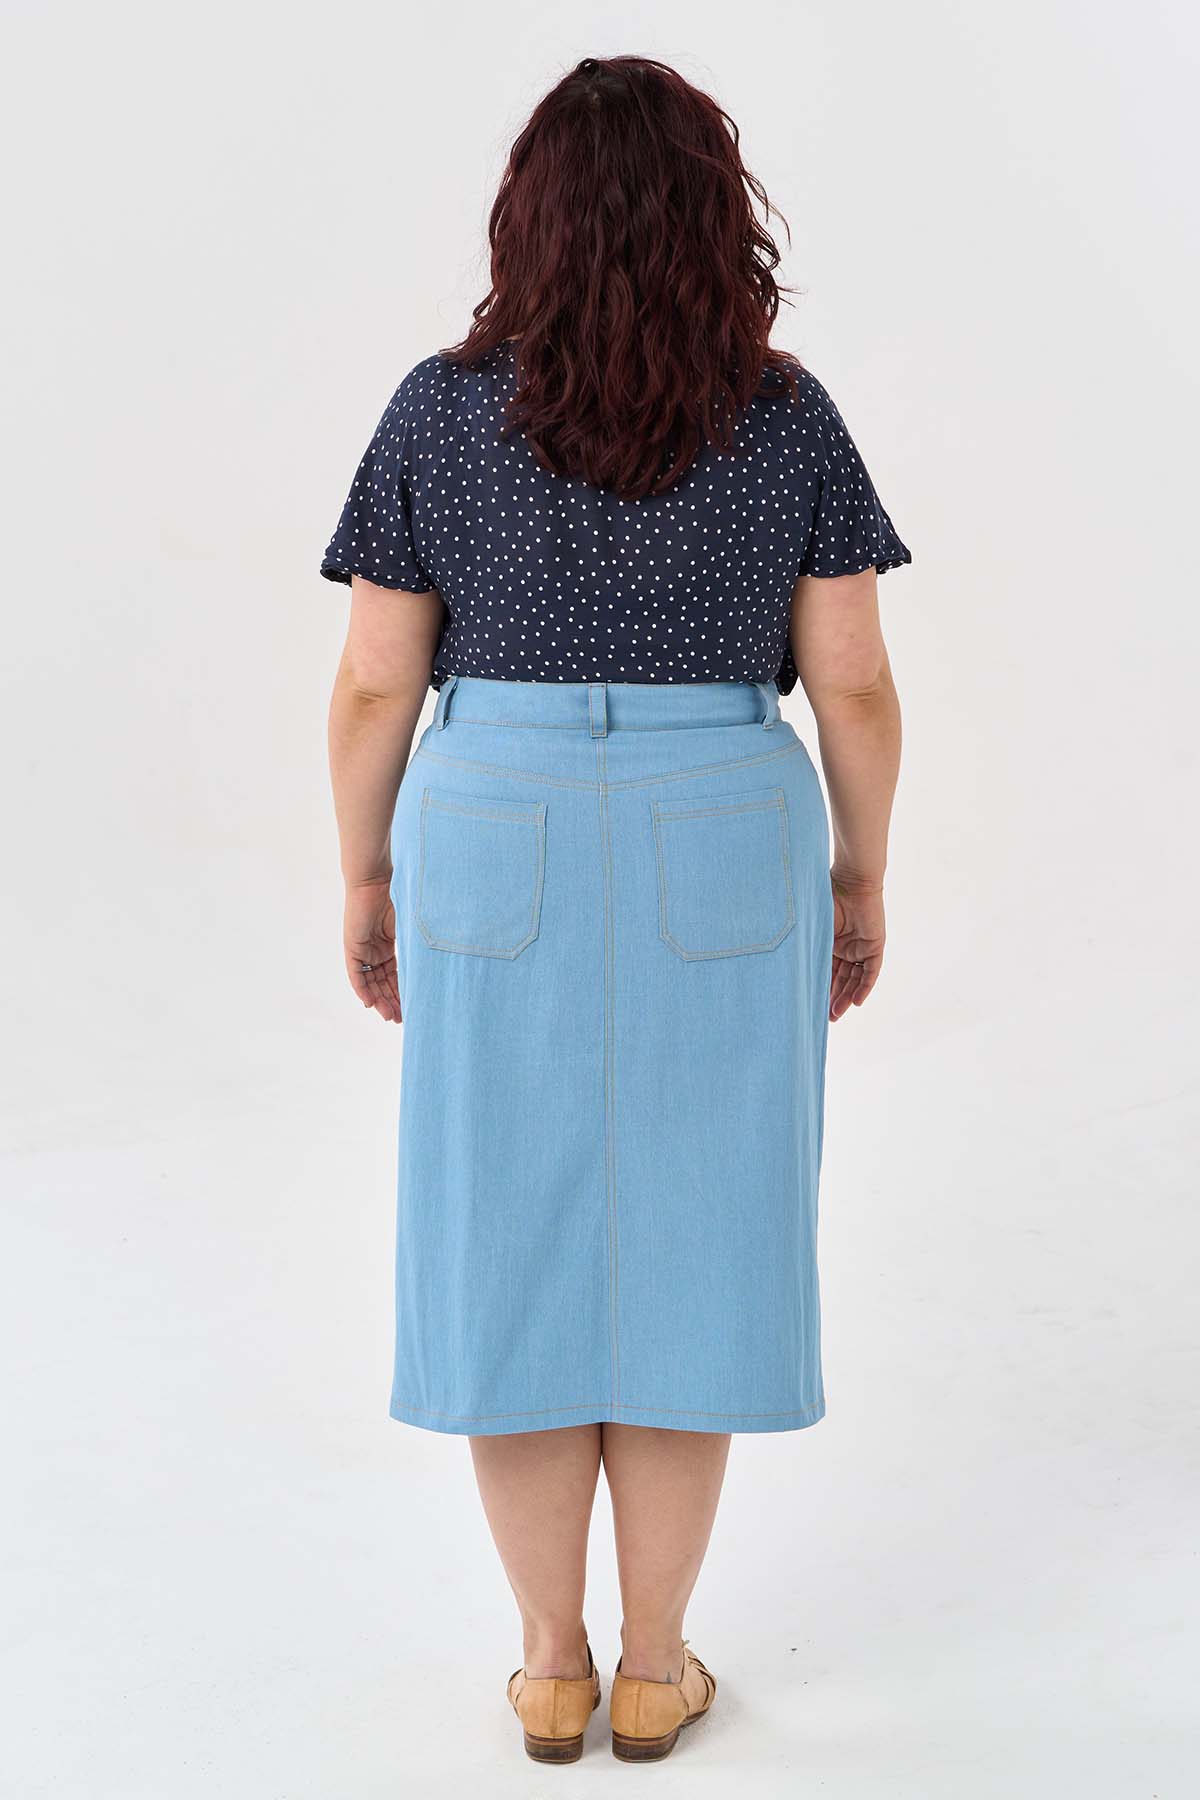 Xanthe Skirt PDF Sewing Pattern